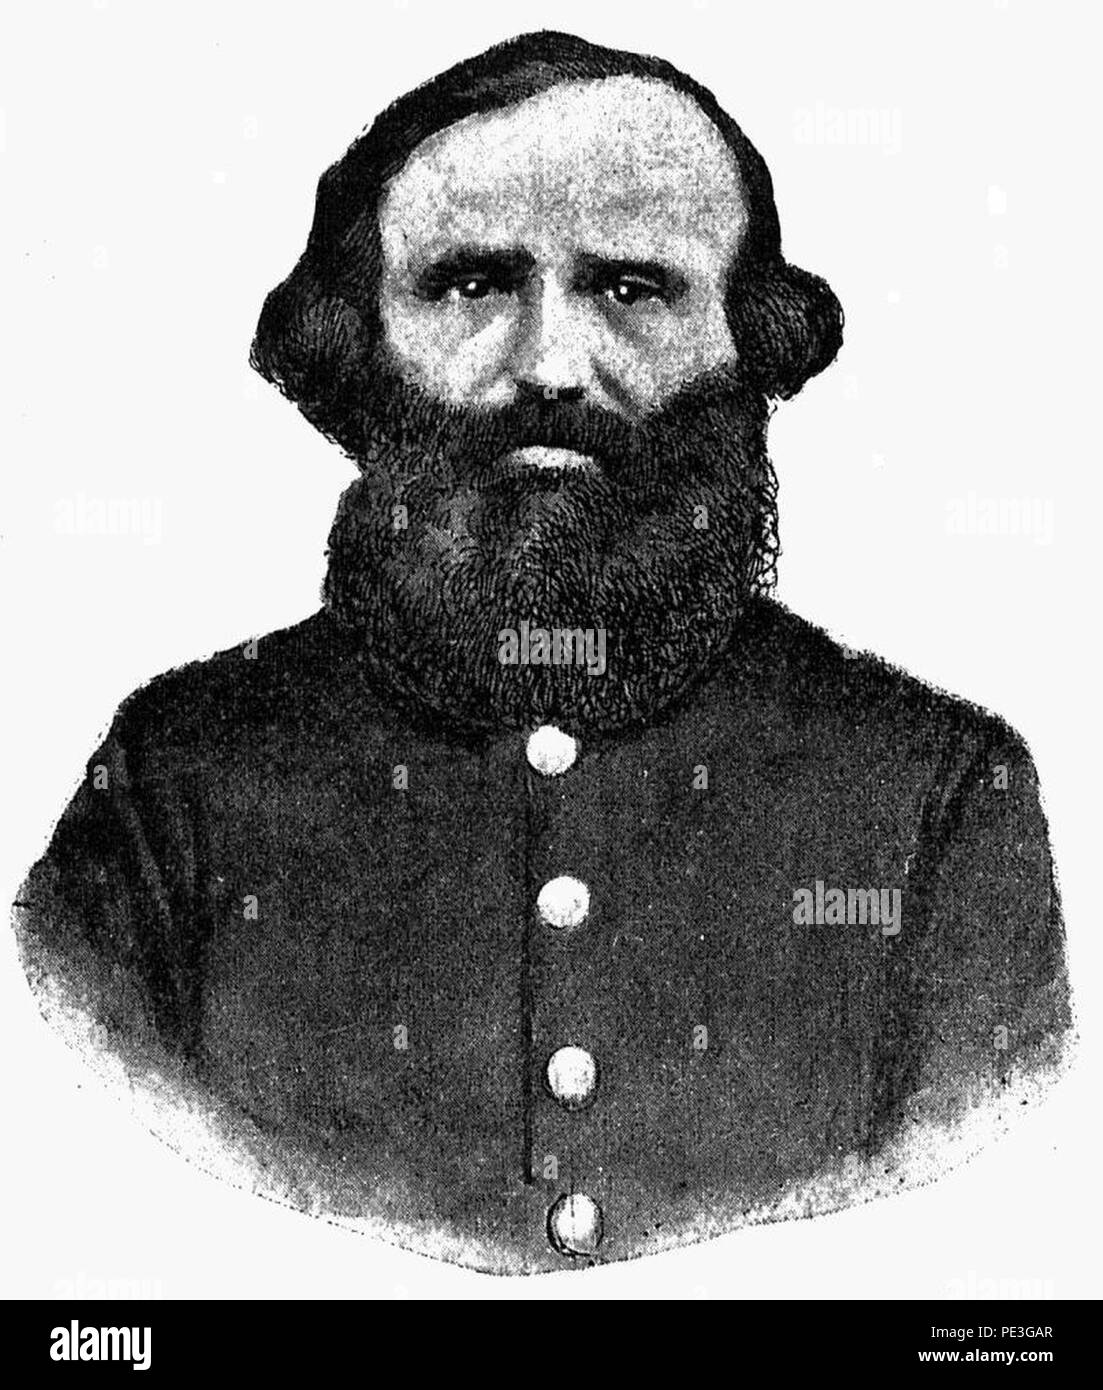 Antonio Estigarribia - Comandante em jefe de la División Paraguaya rendida en Uruguayana el 17 de Setiembre de 1865. Stock Photo